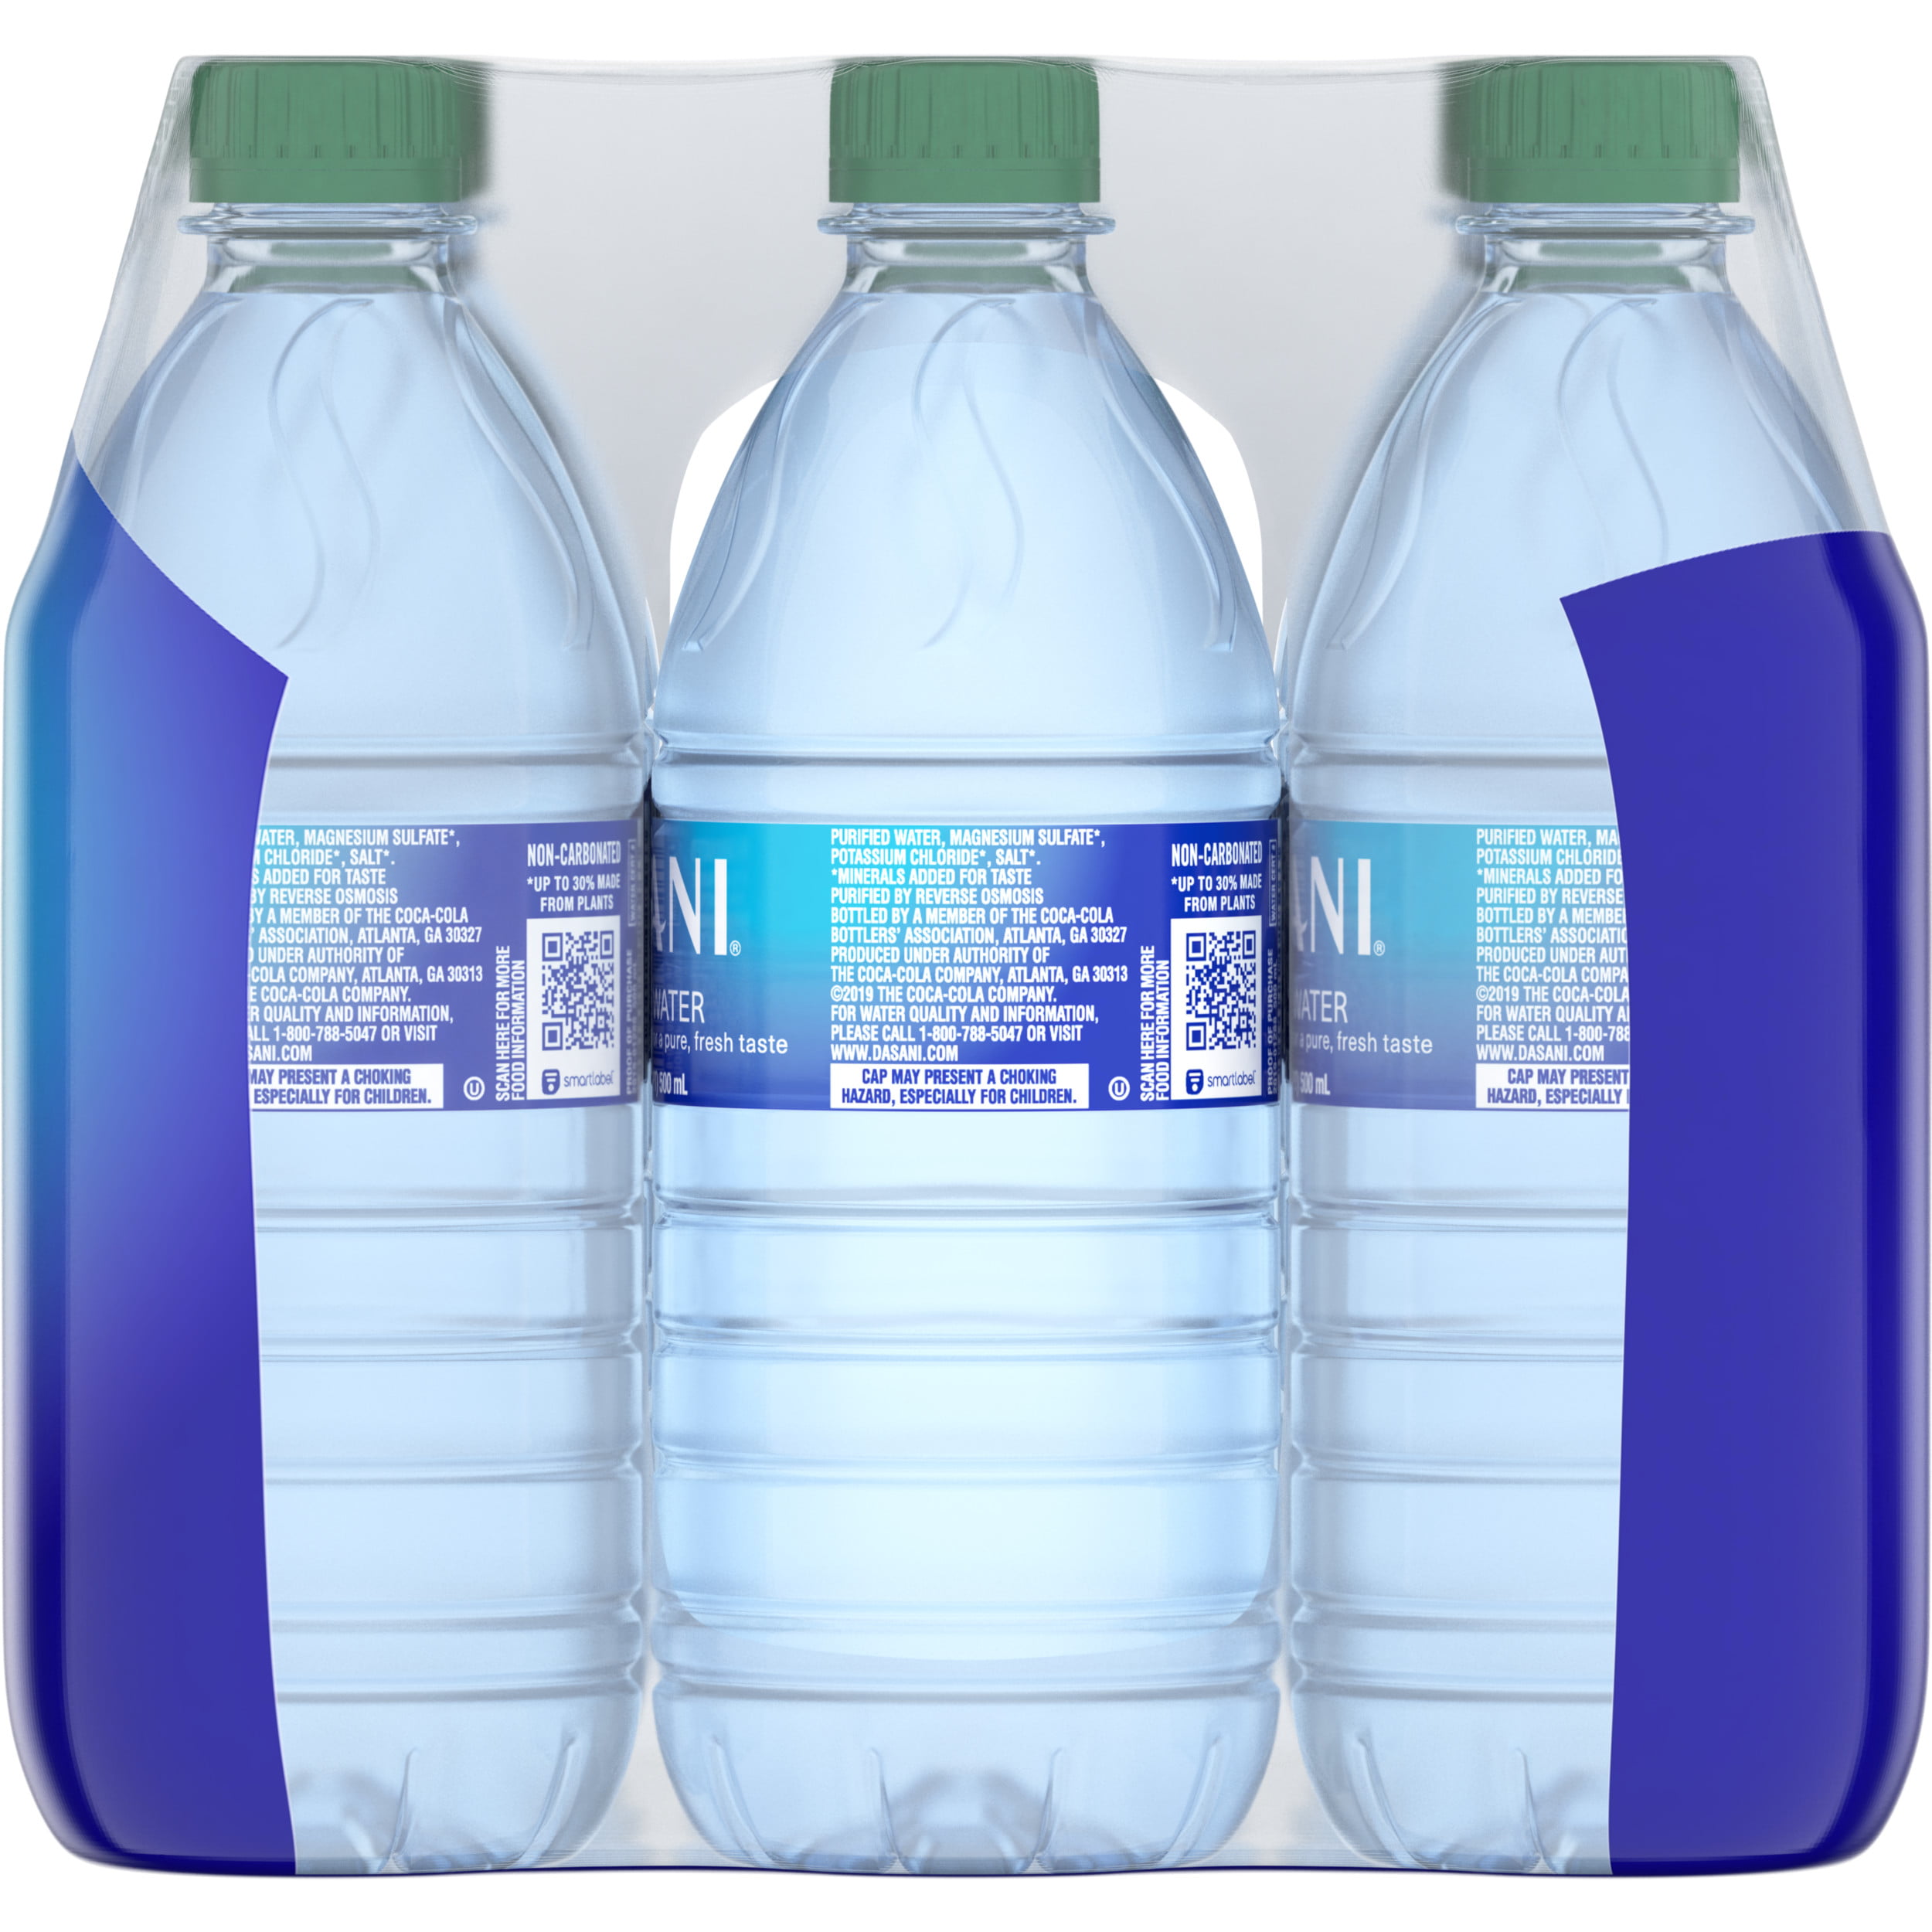 Dasani Water 16 oz –